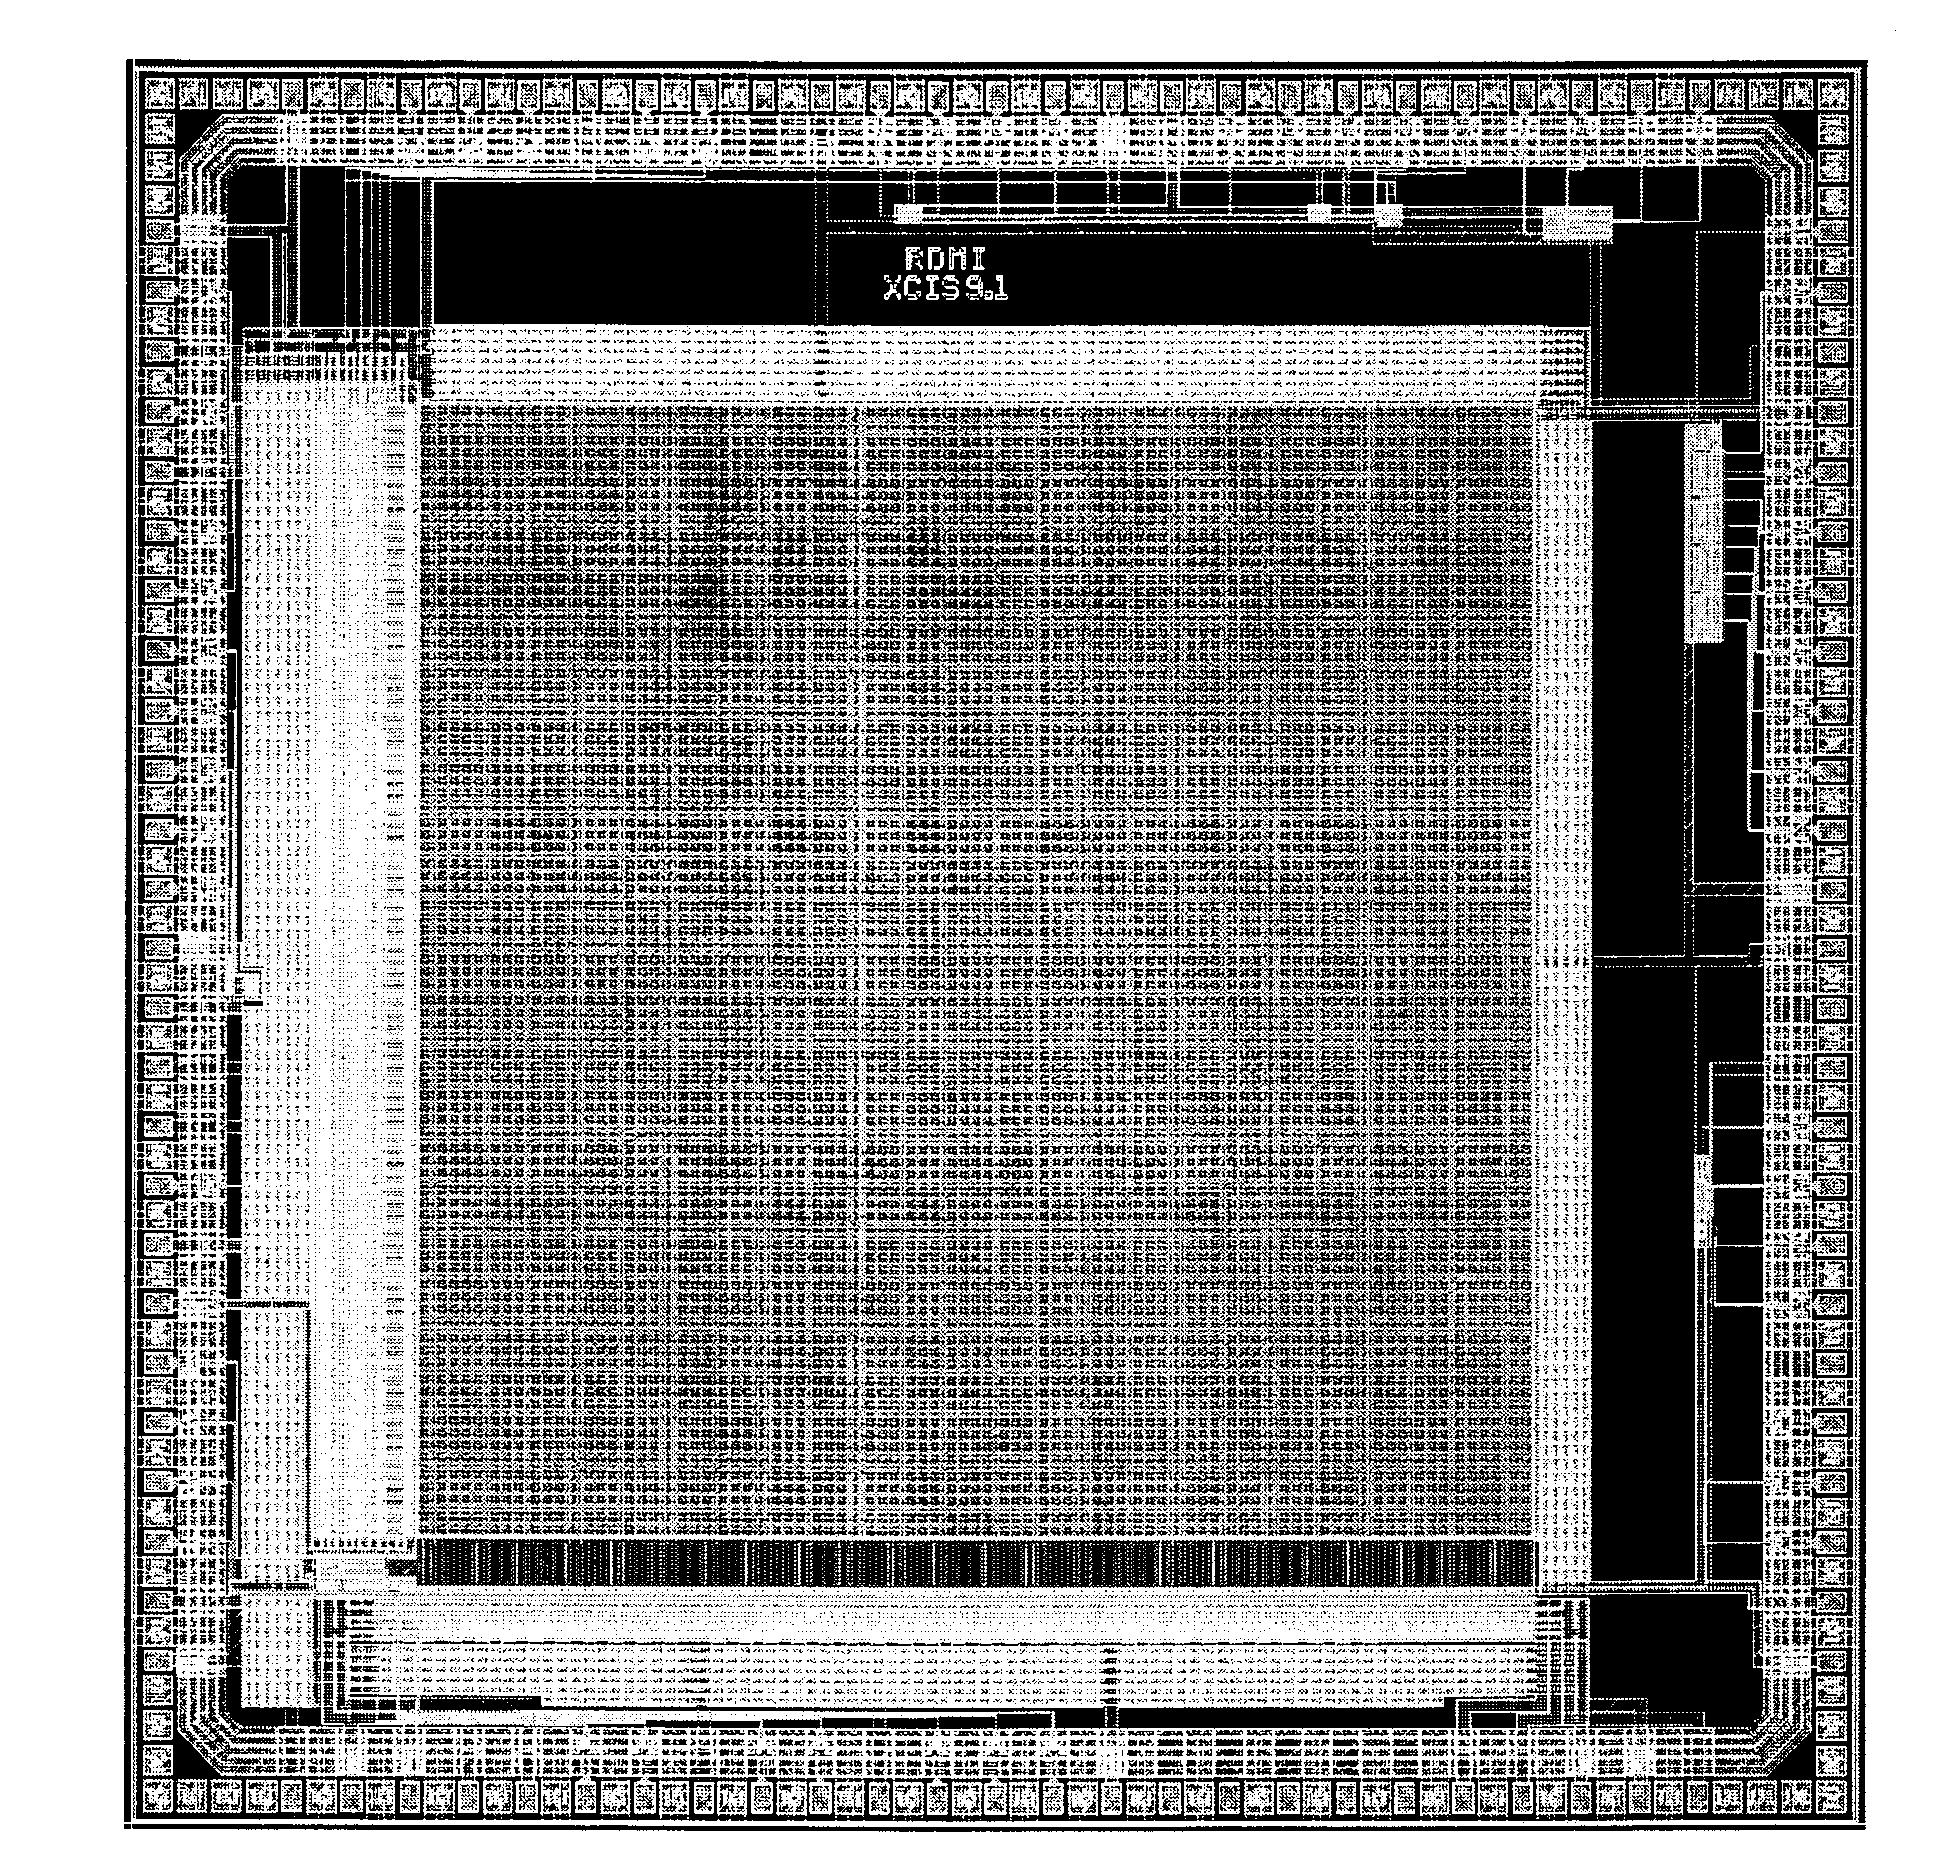 테스트 칩의 전체 layout